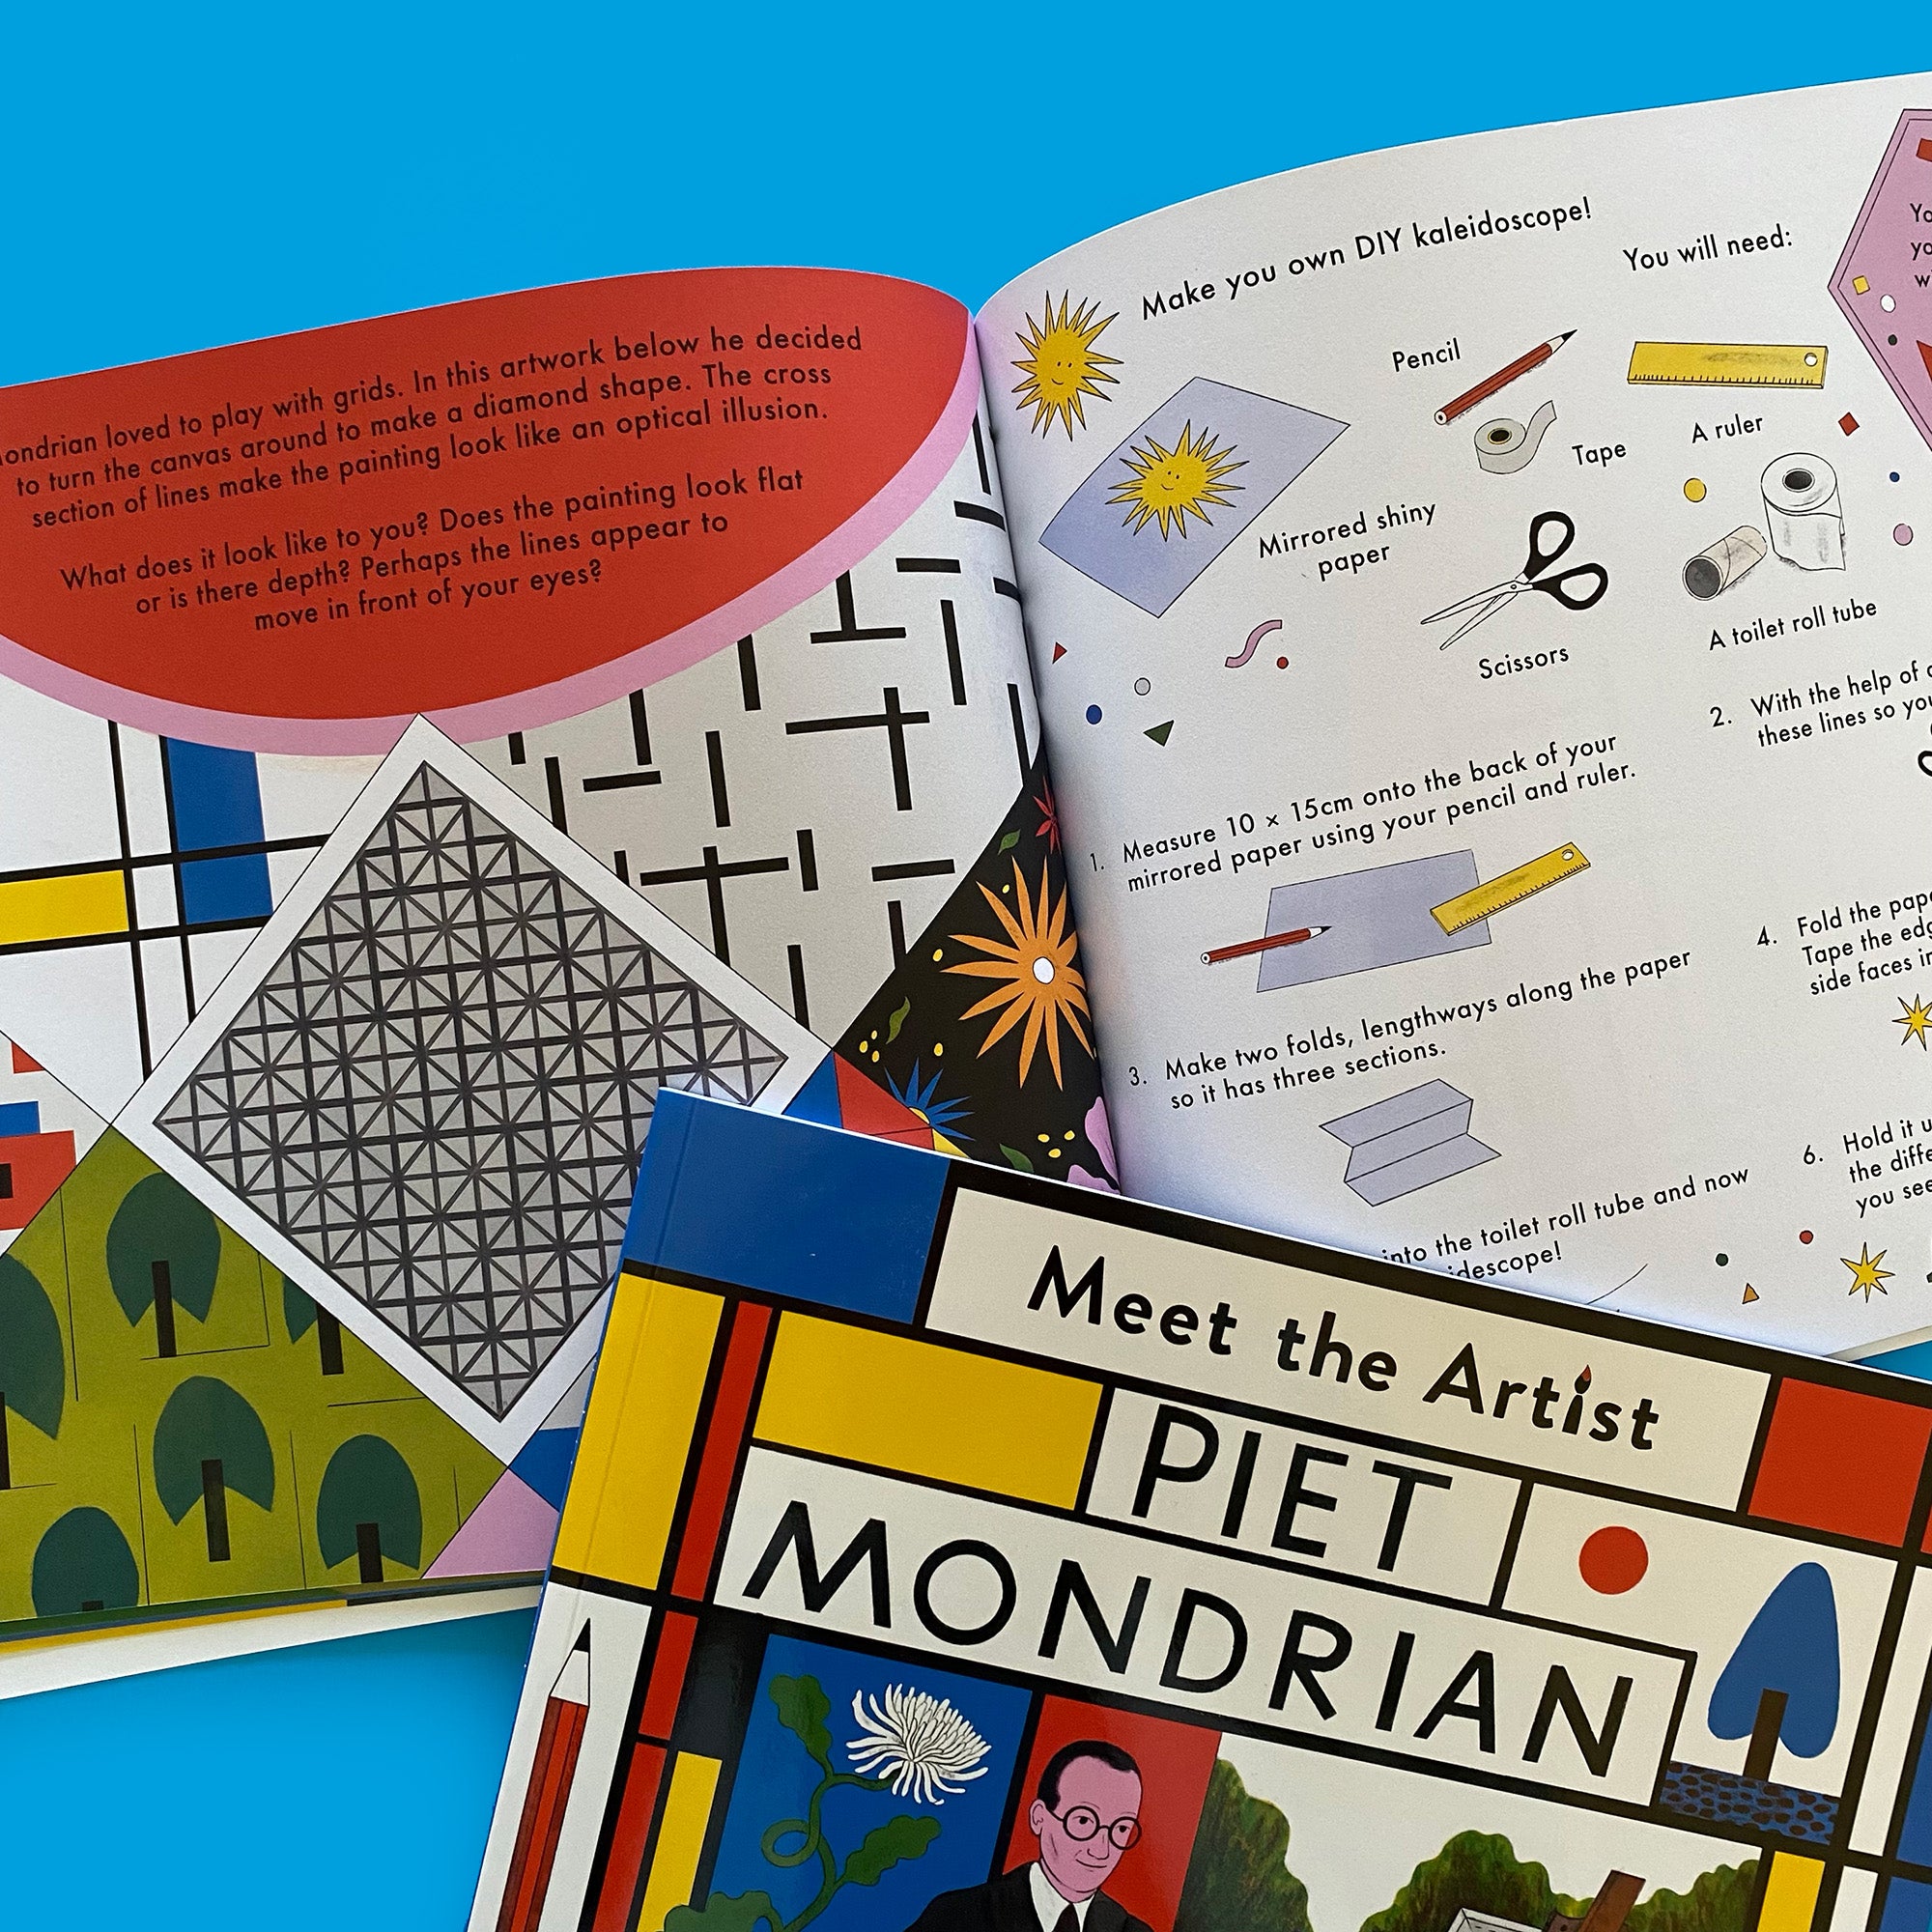 Meet the Artist: Piet Mondrian activity book